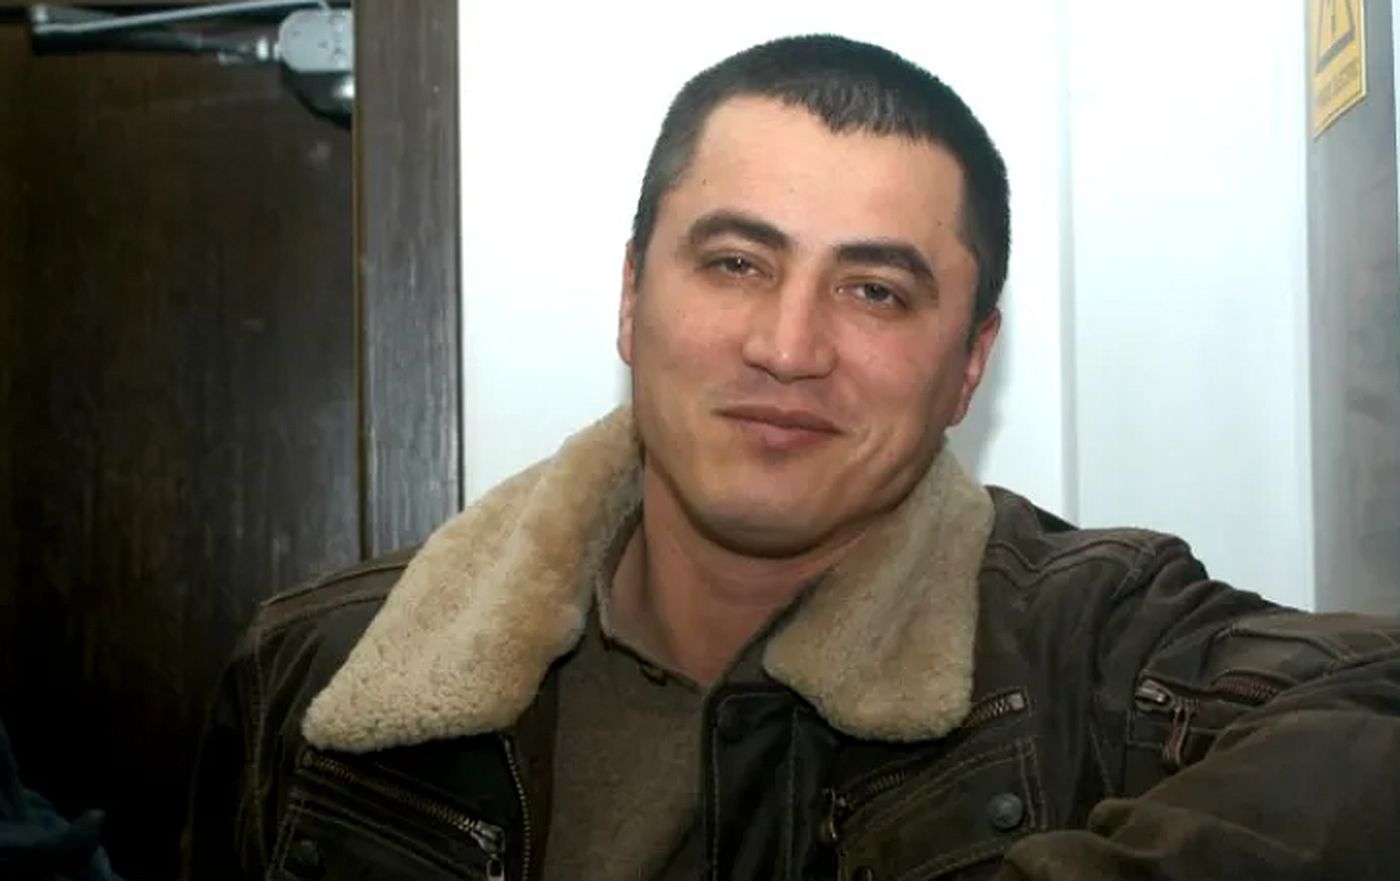 Vedetă în penitenciar, Cristian Cioacă își dă în petec. Ultimul său gest a șocat pe toată lumea